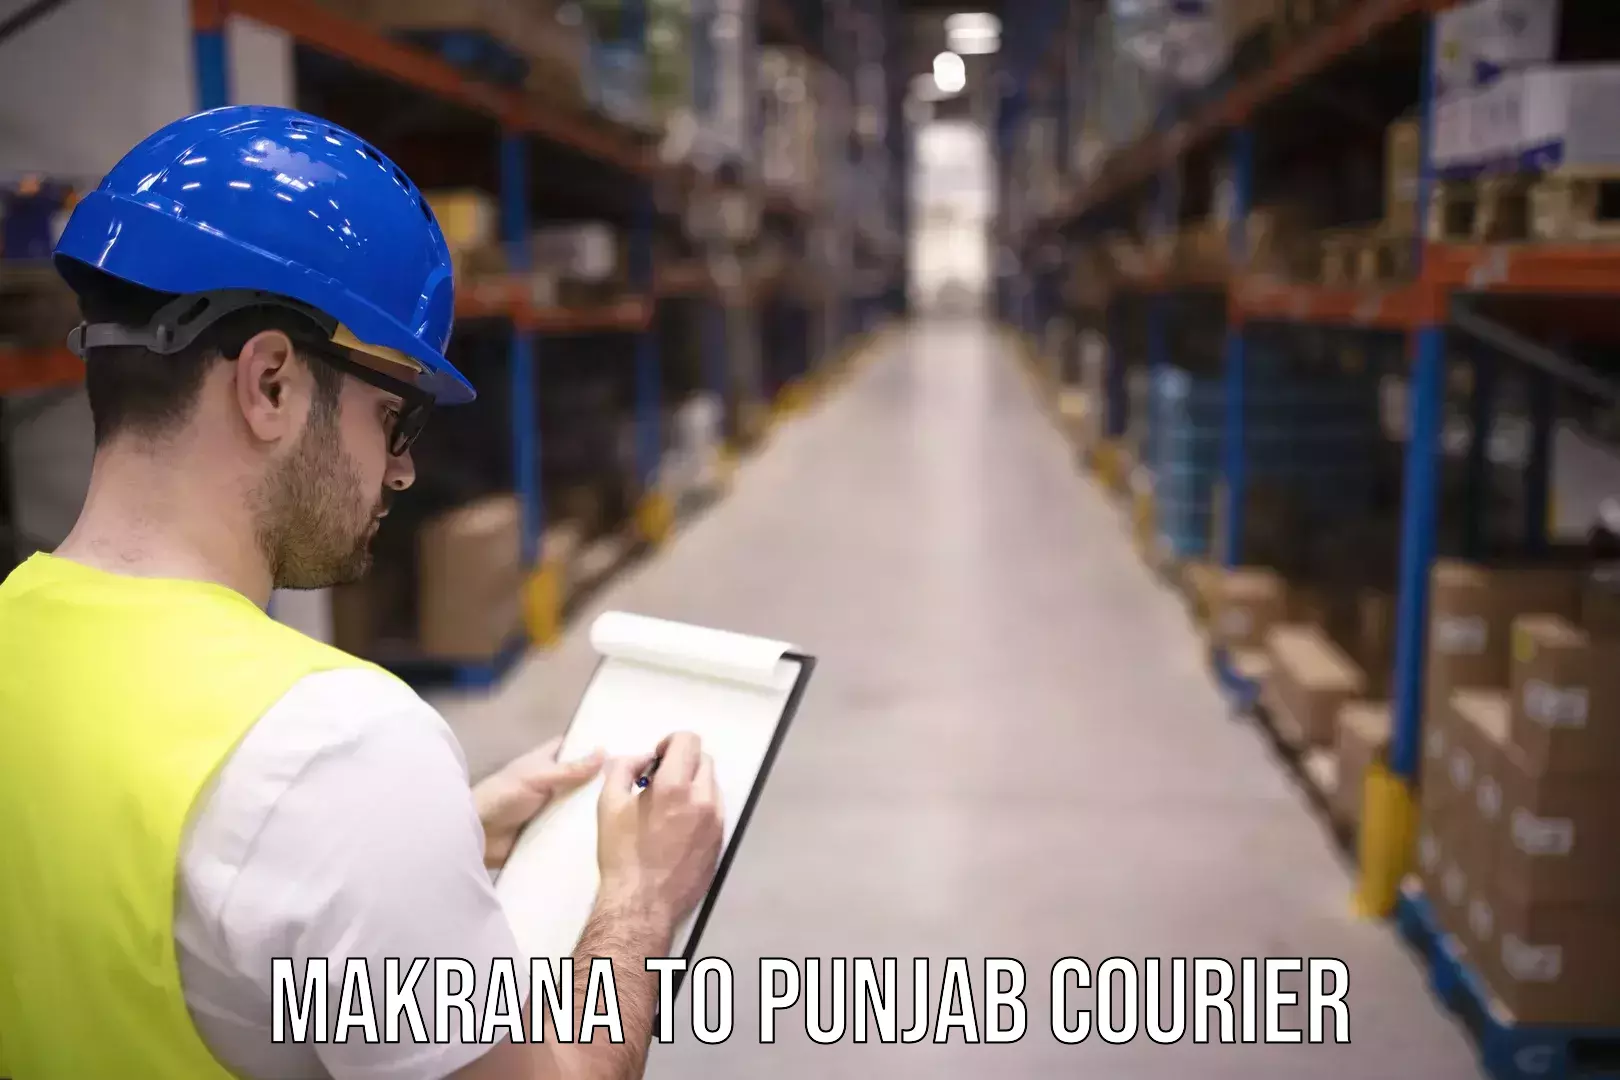 Logistics service provider Makrana to Punjab